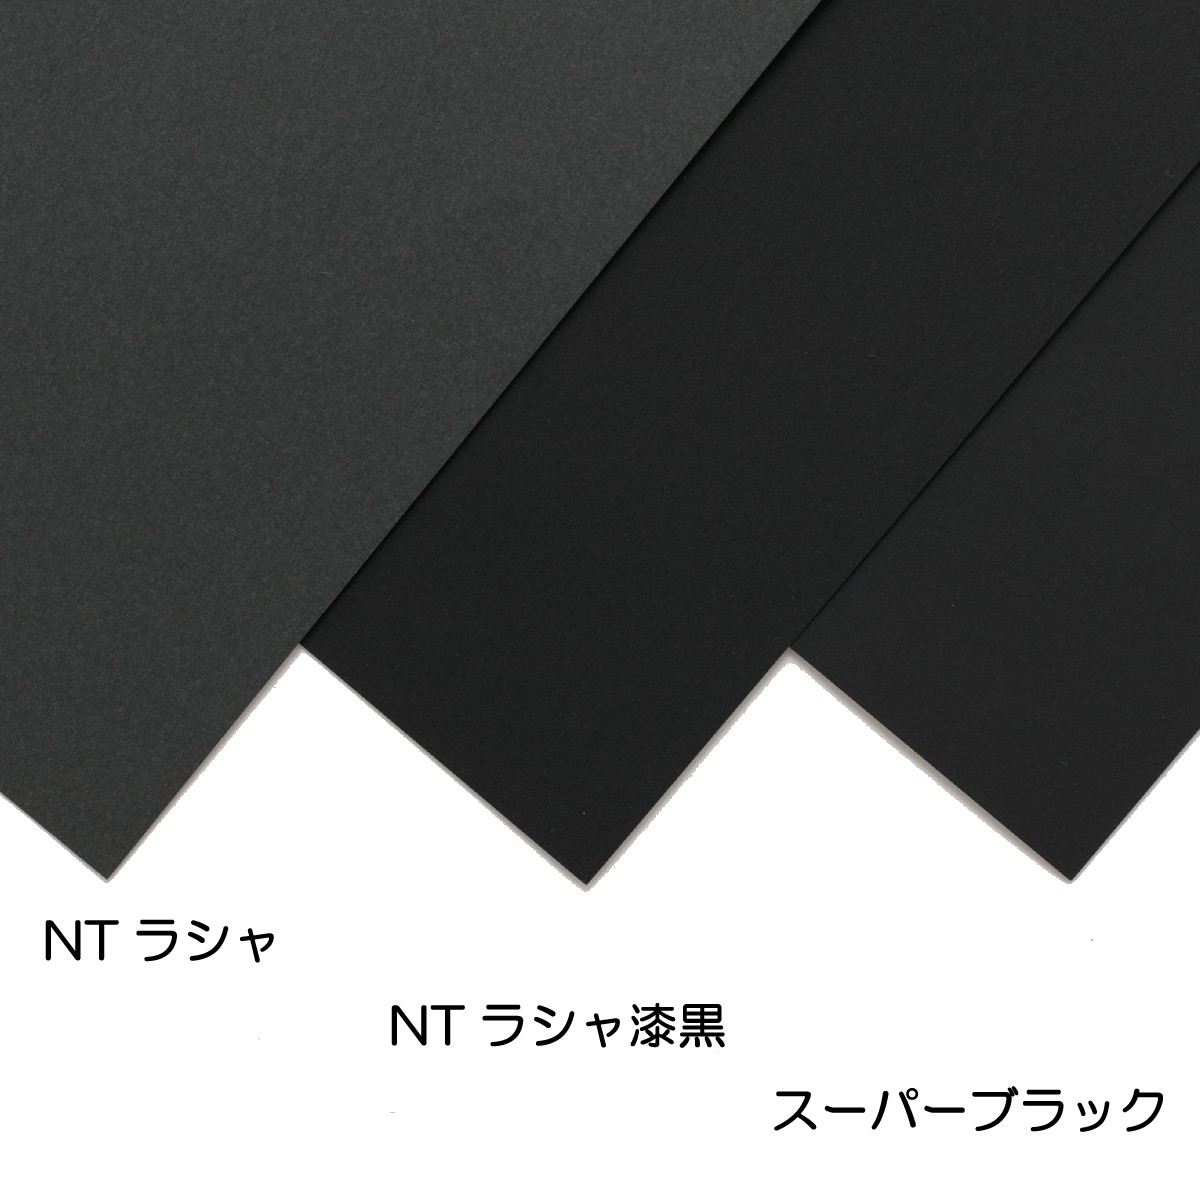 NTラシャ紙 漆黒 最新作売れ筋が満載 100kg 100枚組 八つ切 版画 紙 絵画 用紙